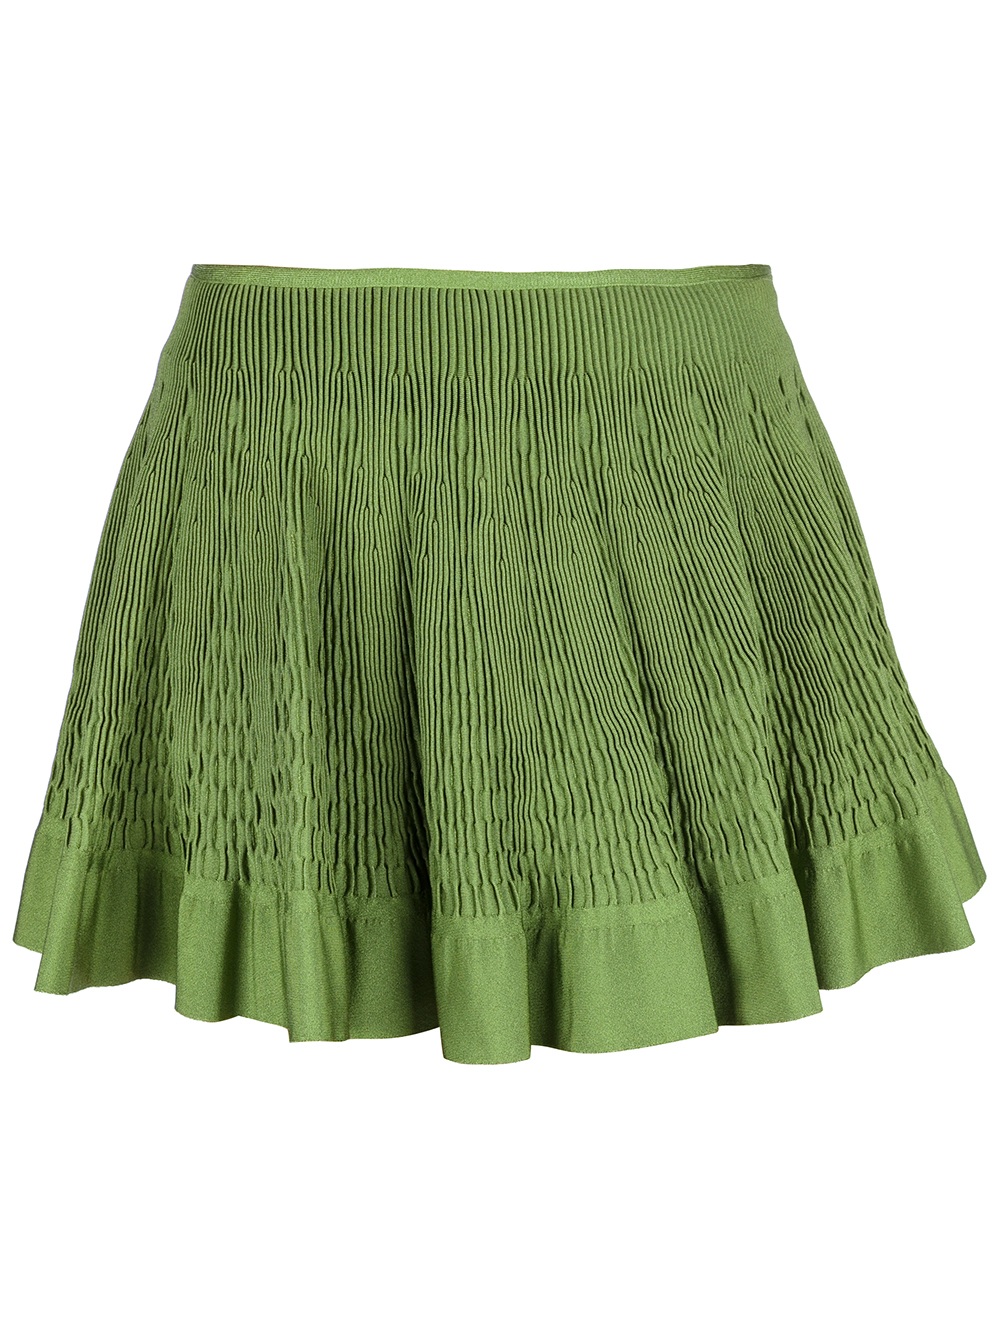 Alaïa Honeycomb Pleat Mini Skirt in Green - Lyst